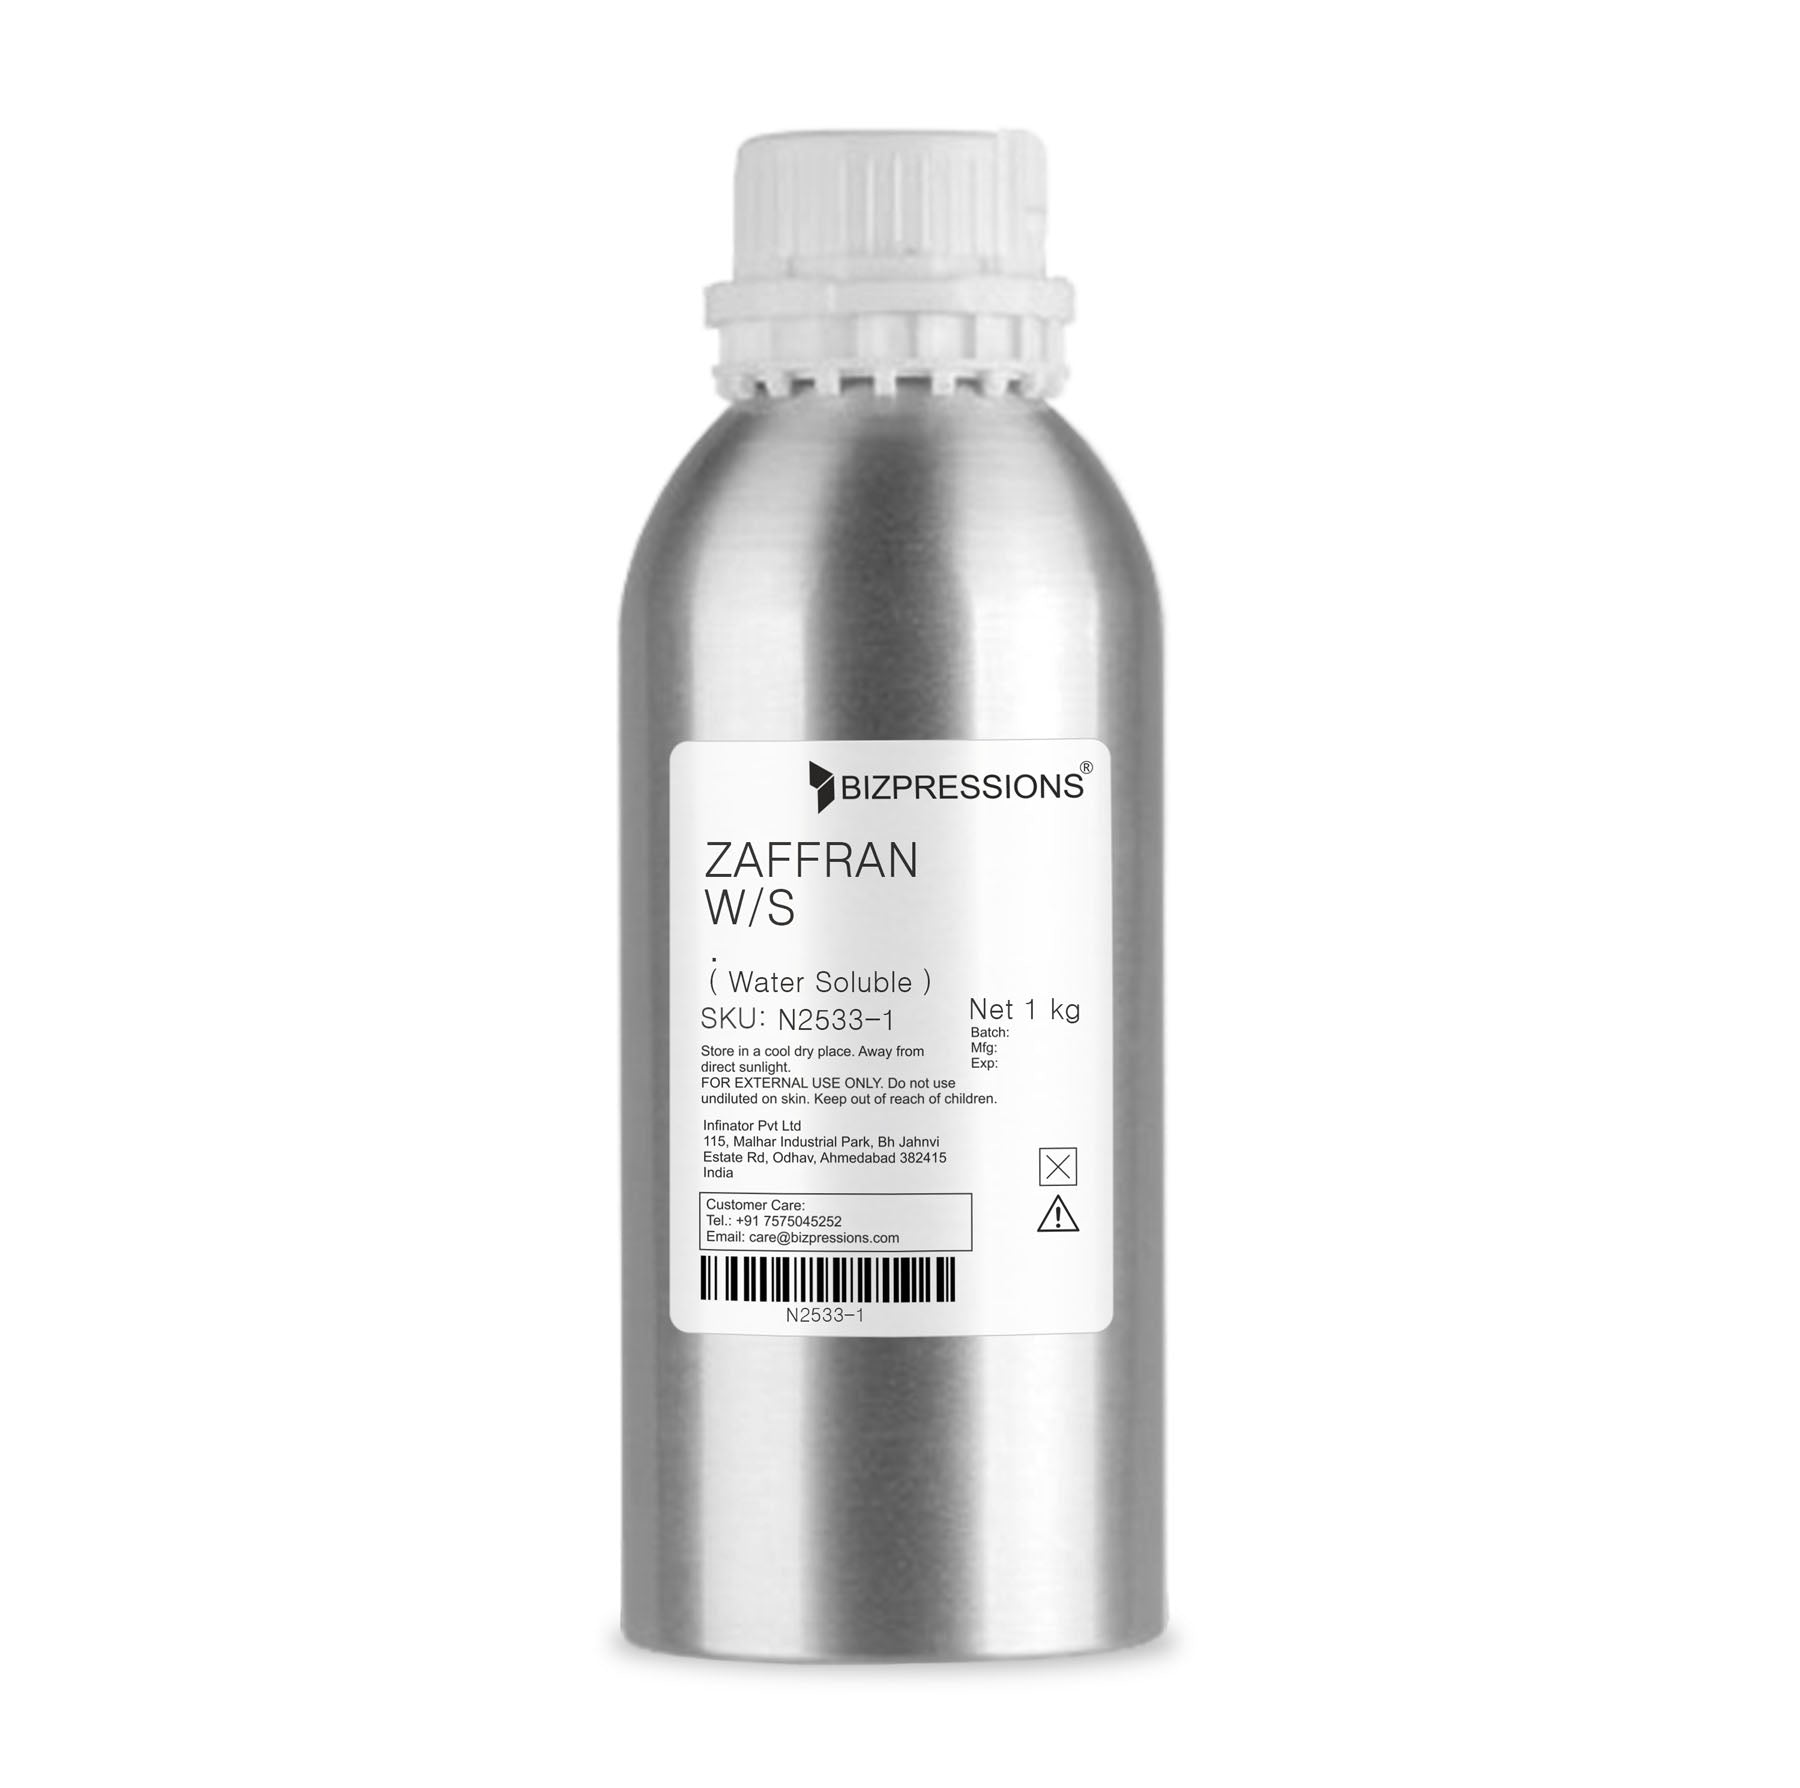 ZAFFRAN W/S - Fragrance ( Water Soluble ) - 1 kg